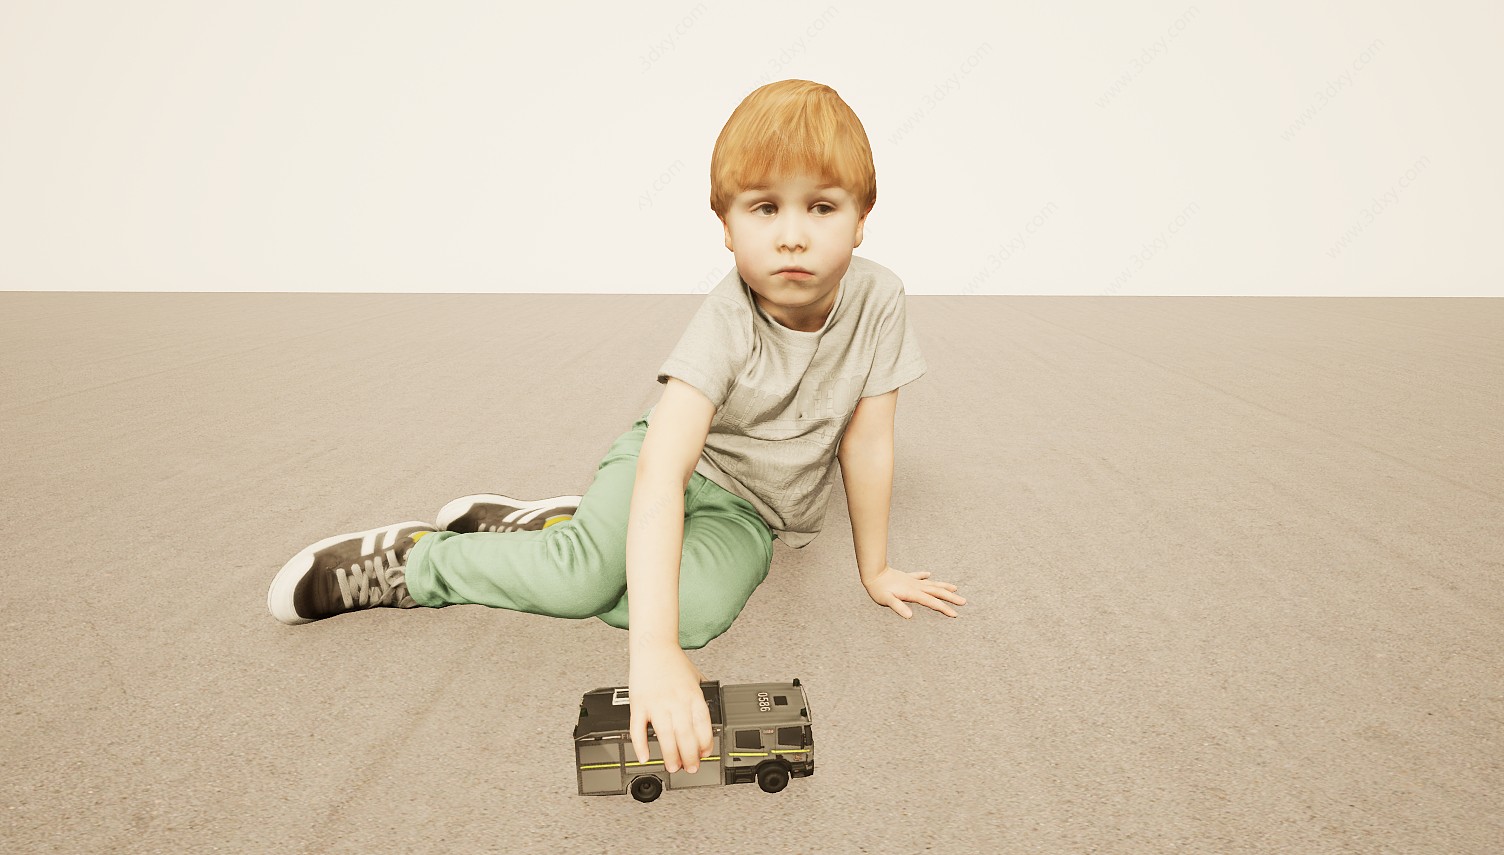 地板玩车玩具欧洲小男孩3D模型